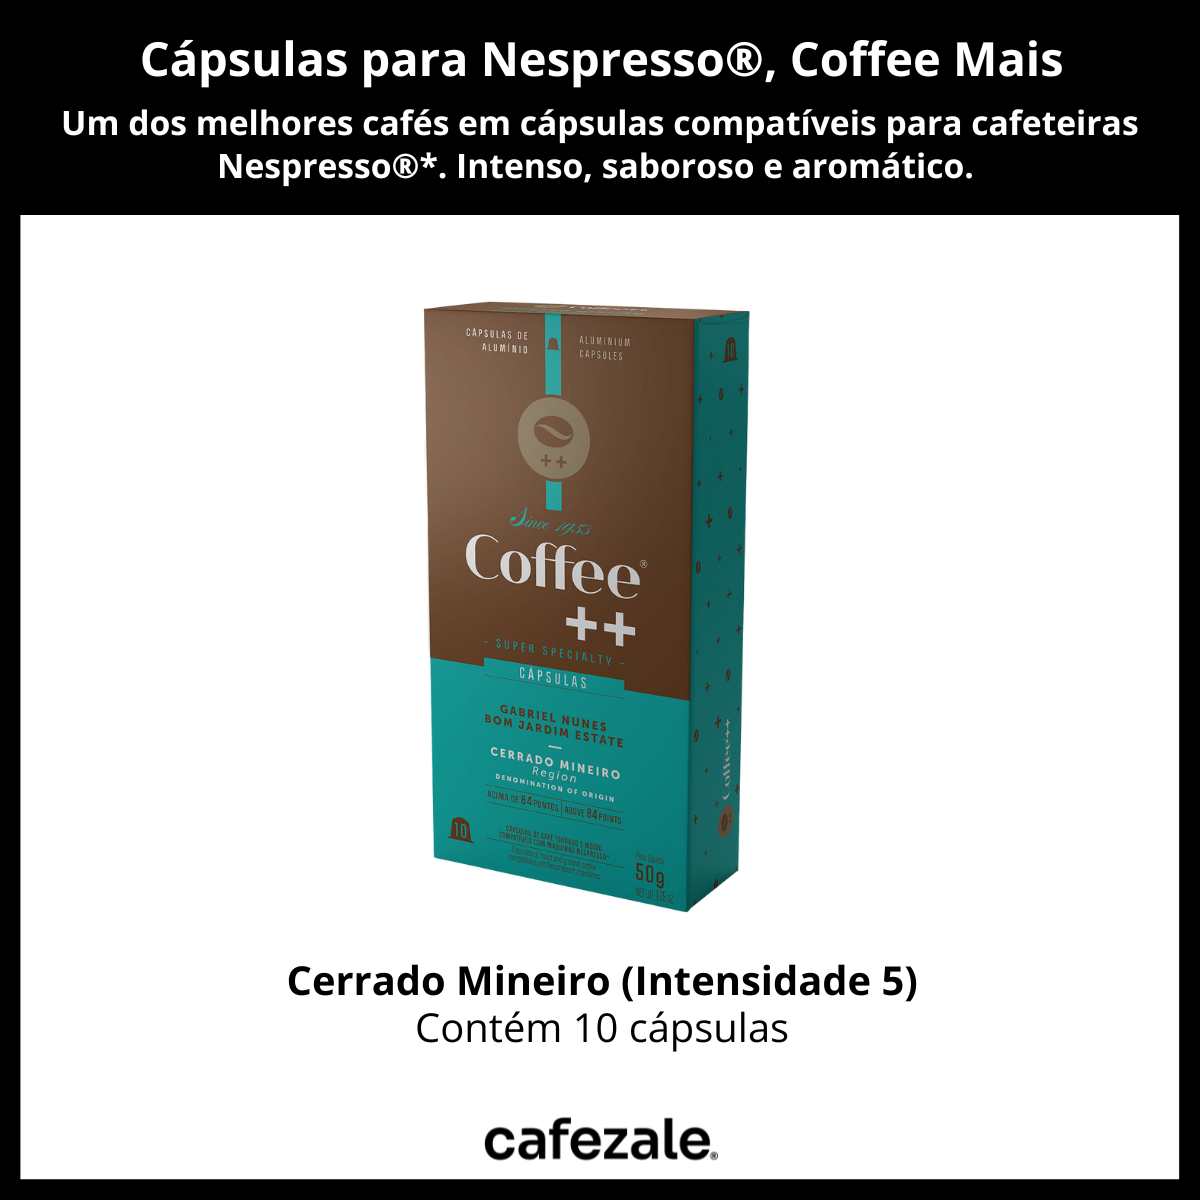 Cápsulas para Nespresso, Café Coffee Mais, Cerrado Mineiro